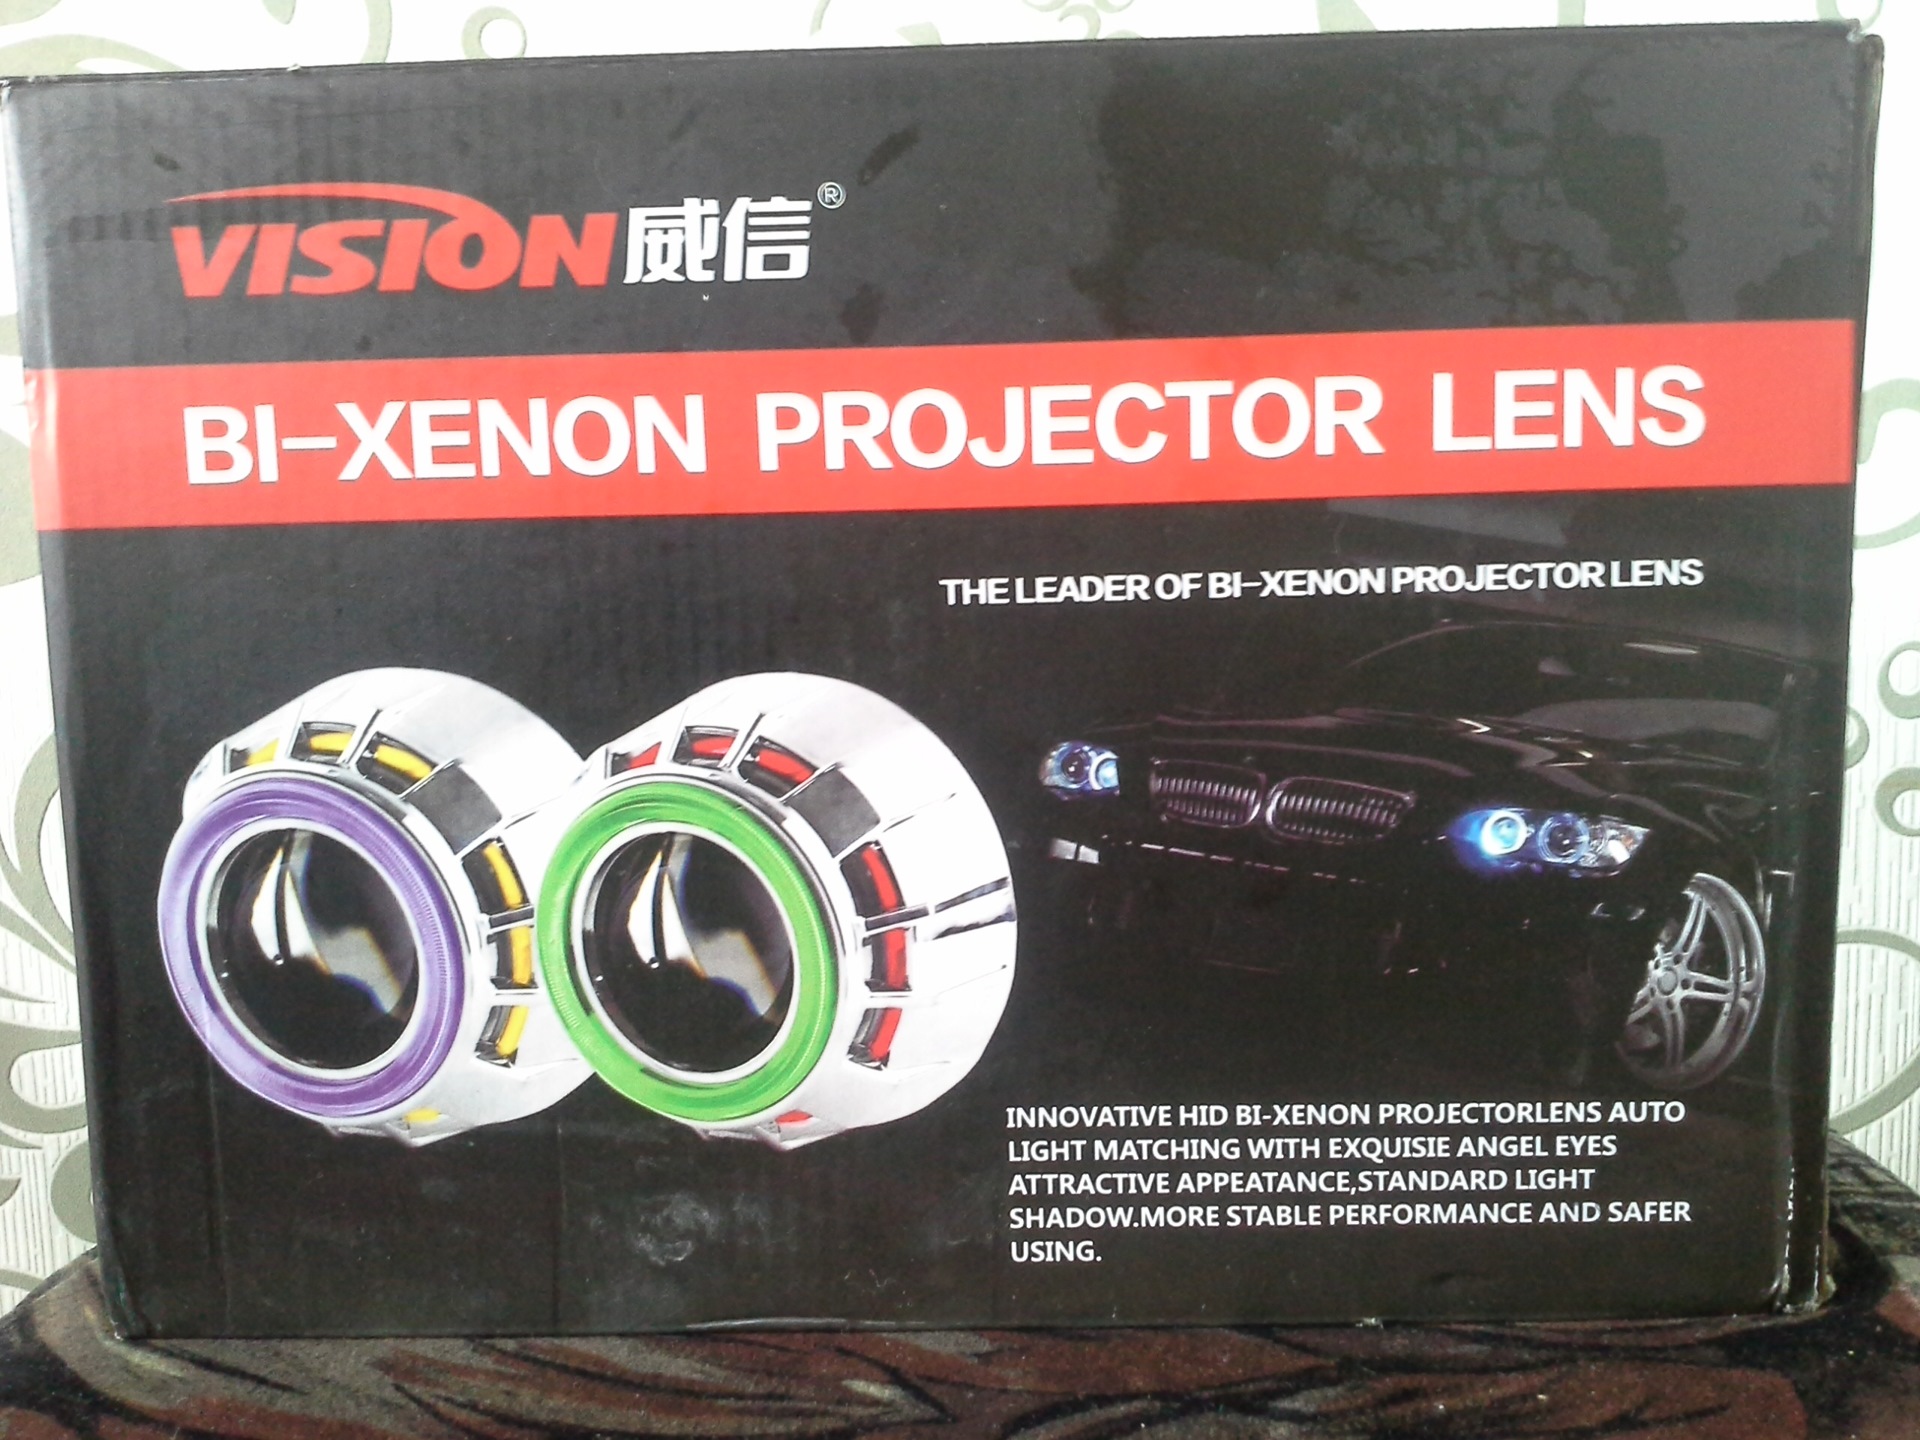 Xenon project